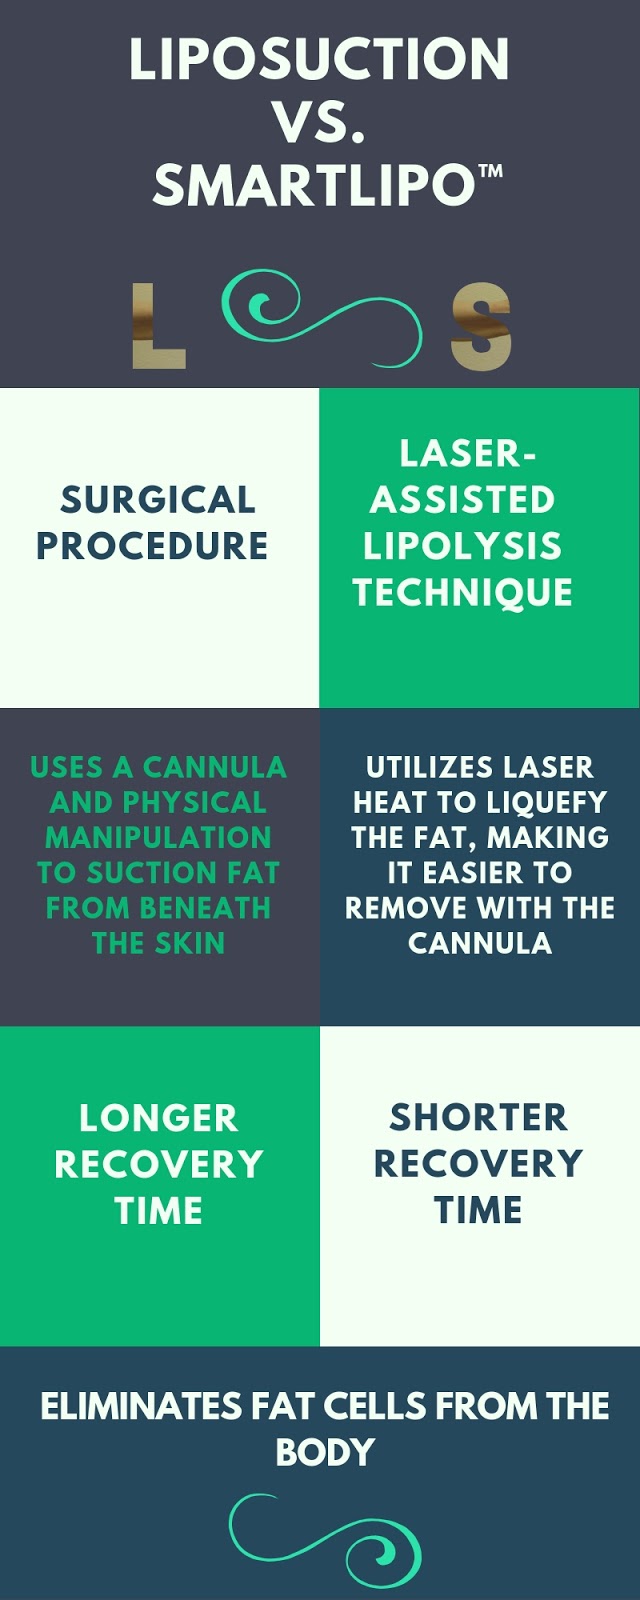 Liposuction vs. Smartlipo™